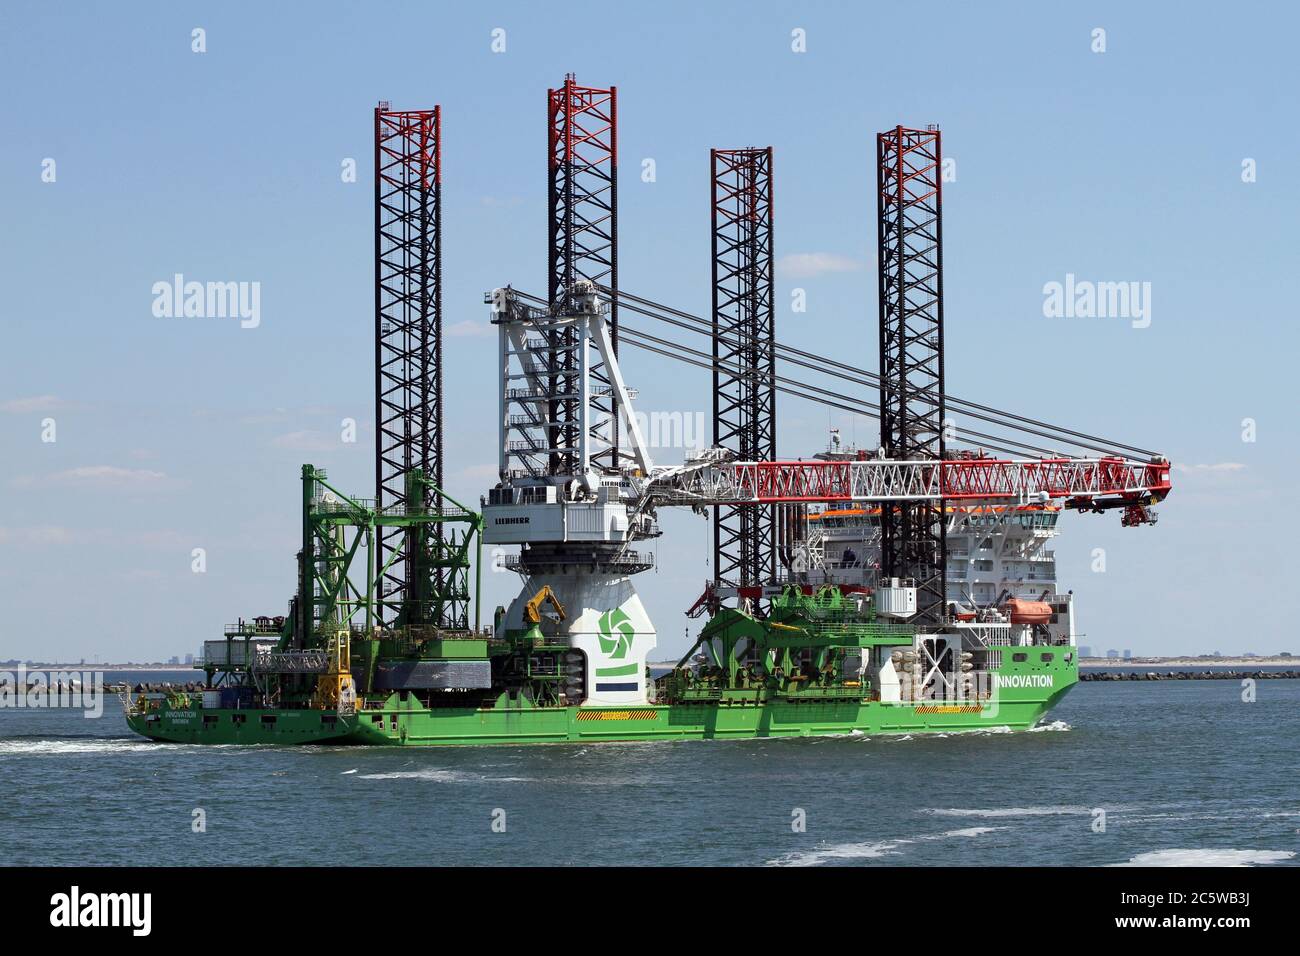 Die Offshore Supply Ship Innovation wird am 30. Mai 2020 den Hafen von Rotterdam erreichen. Stockfoto